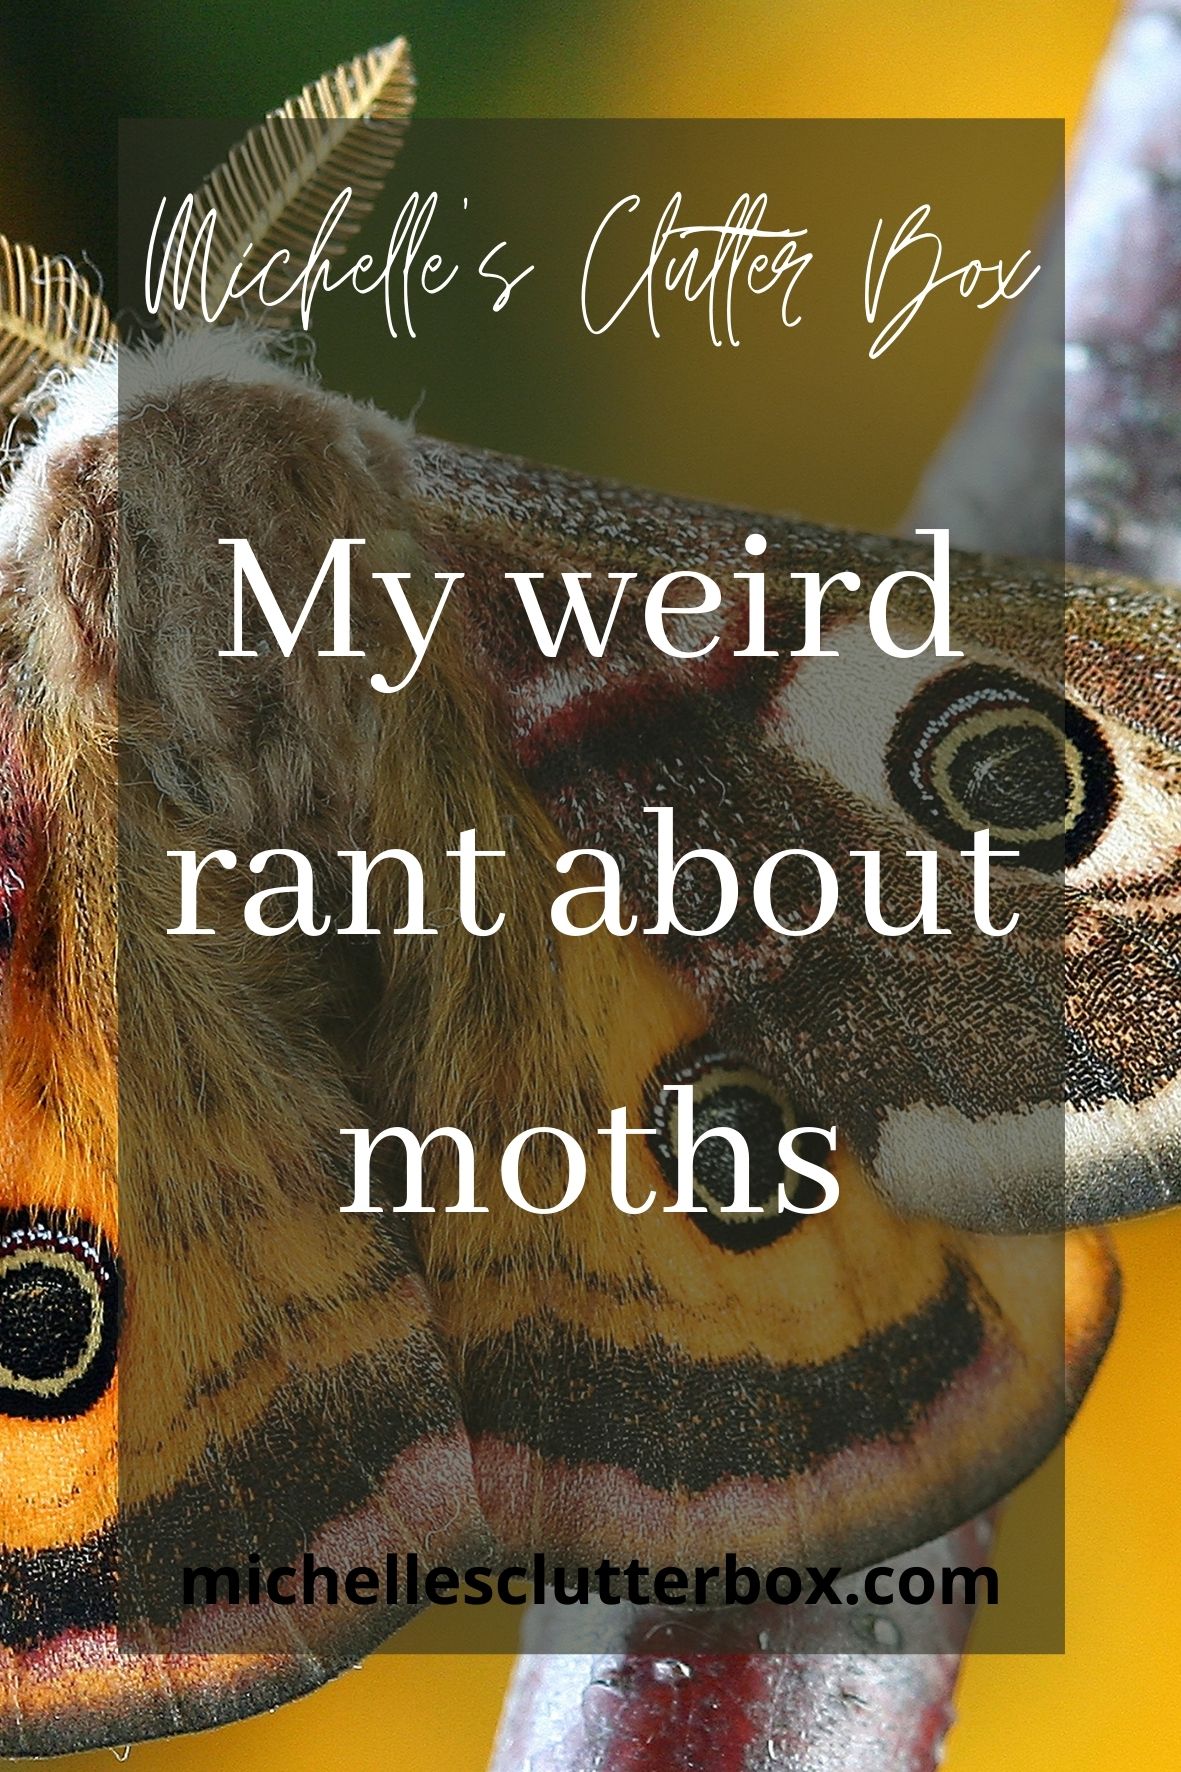 My weird rant about moths